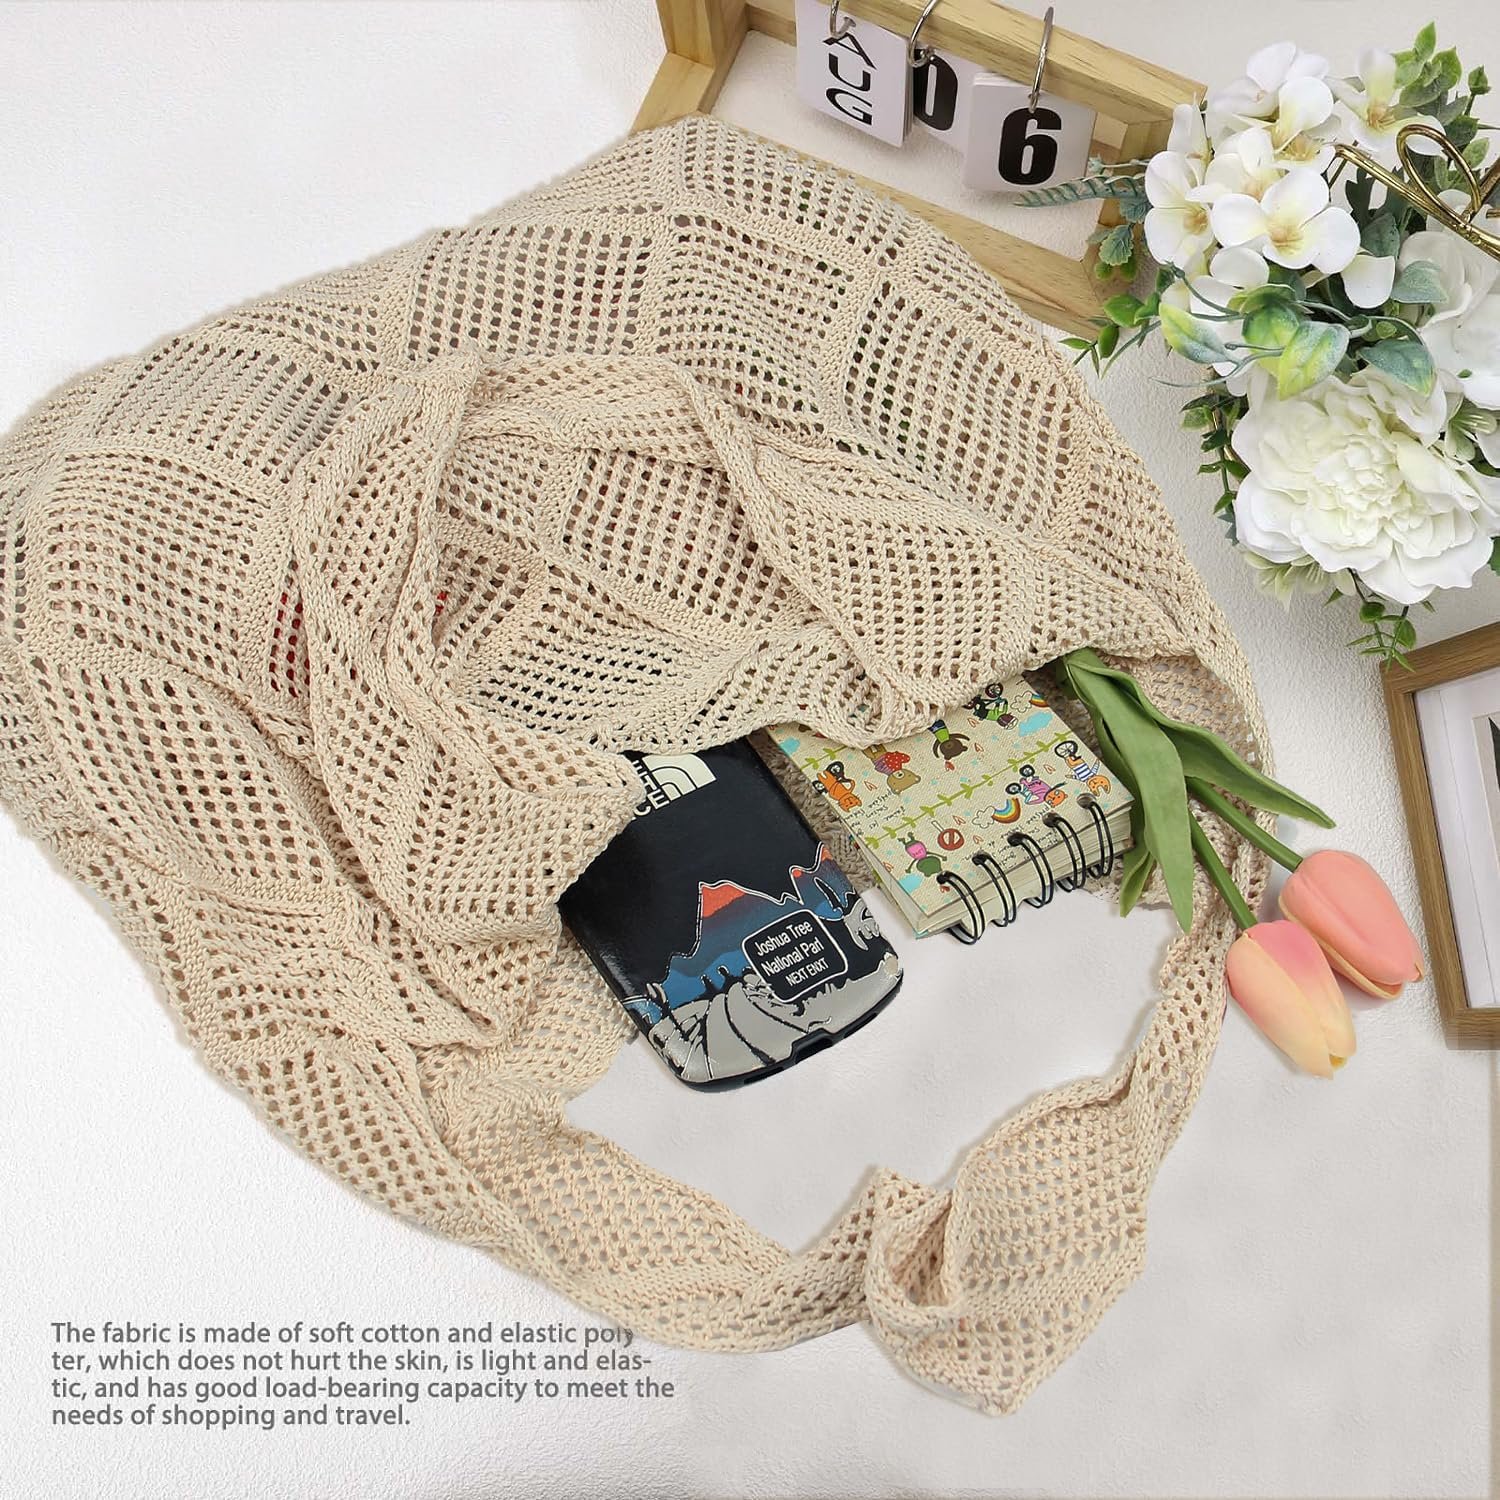 Stizimn Crochet Mesh Beach Tote Bag Shoulder Bag Handbags Knitting Hollow Summer Bag Hobo Bag Aesthetic for Women